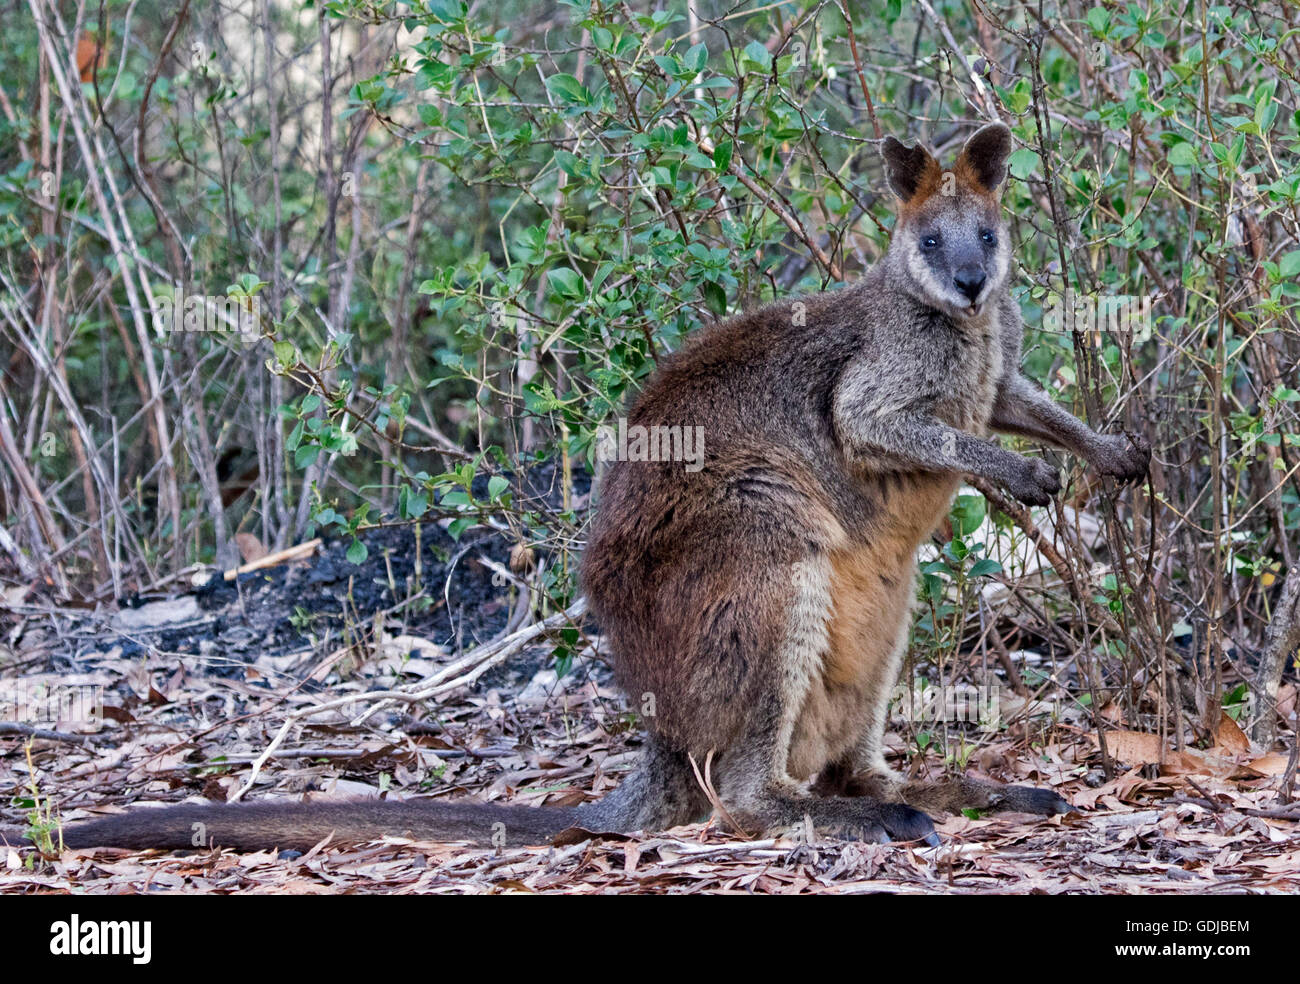 Swamp wallaby, Wallabia bicolor, con spesse marrone rossiccio e pelliccia, fissando la telecamera, nella foresta in Mount Kaputar National Park NSW Foto Stock